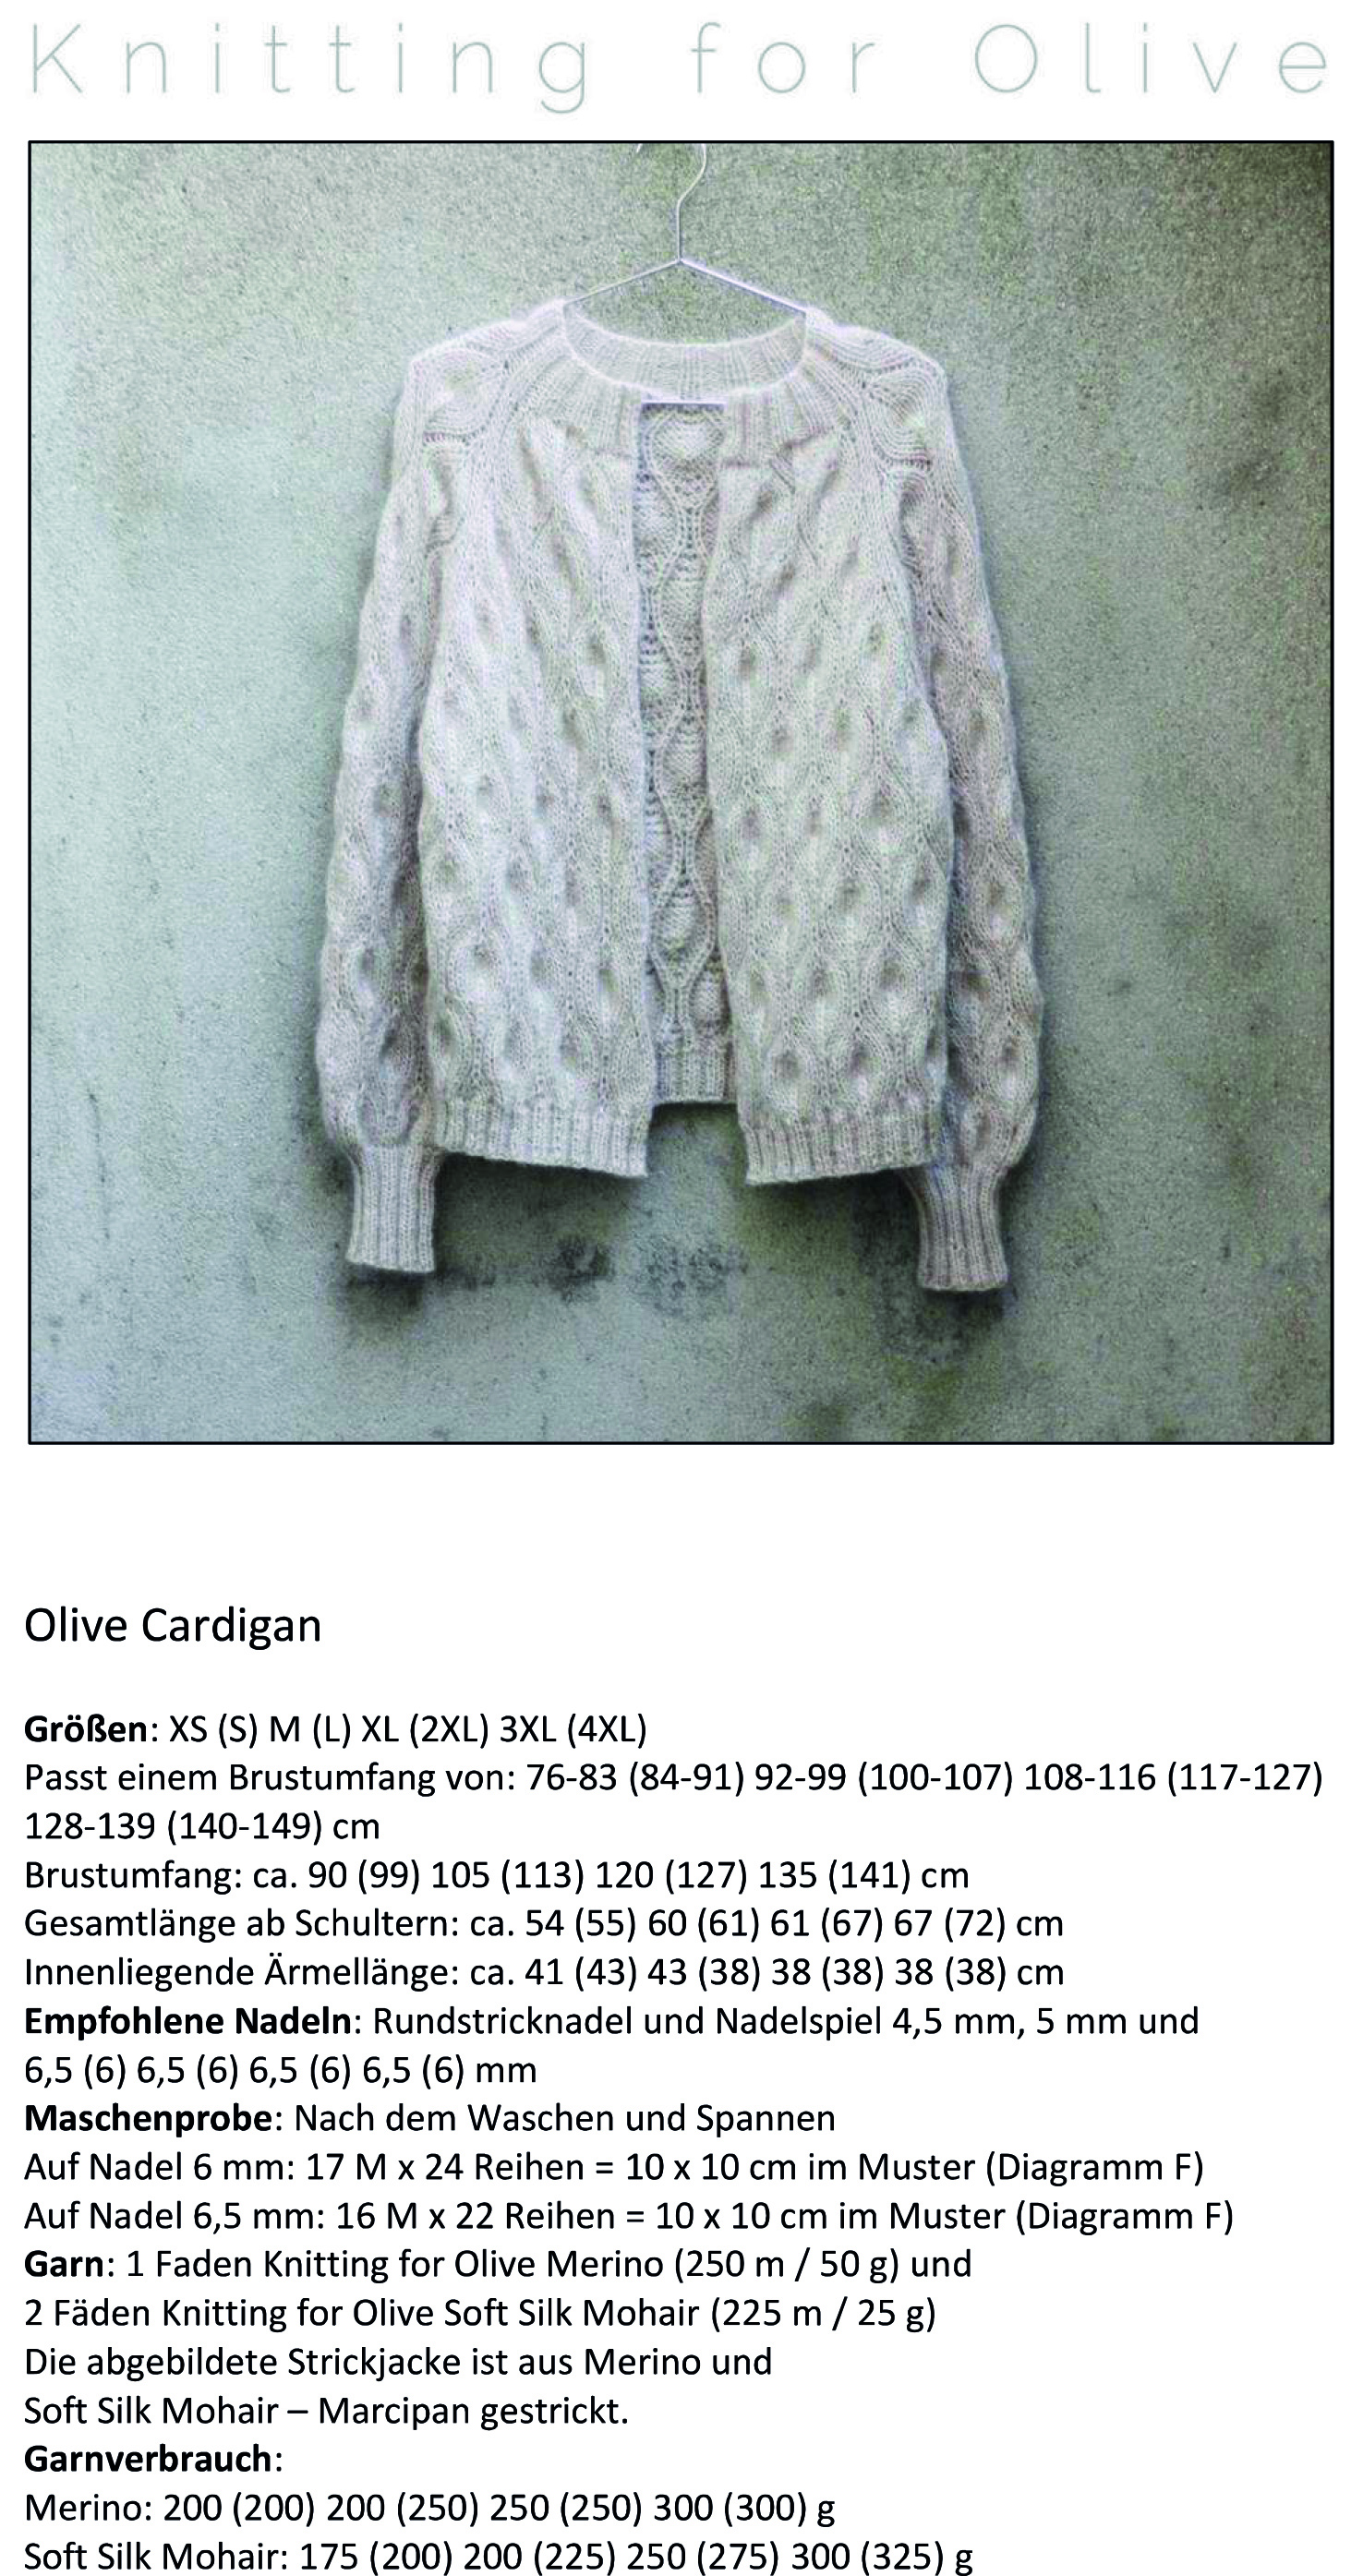 Knitting for Olive ANLEITUNGEN